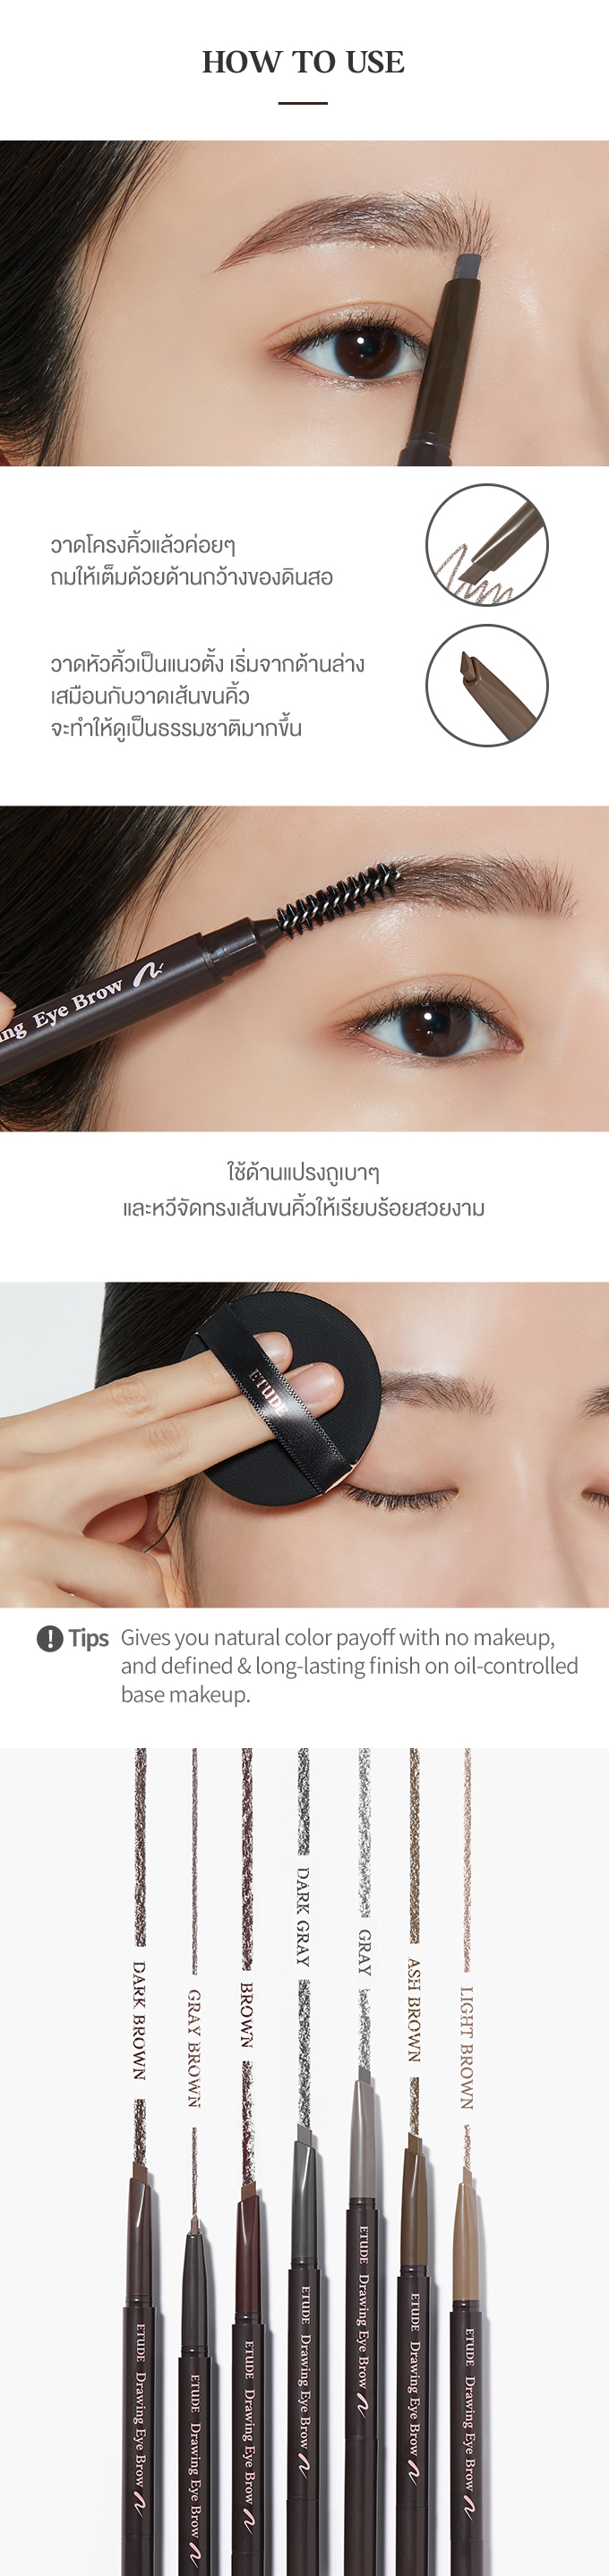 drawing_eye_brow_21ad_sub_Thai04